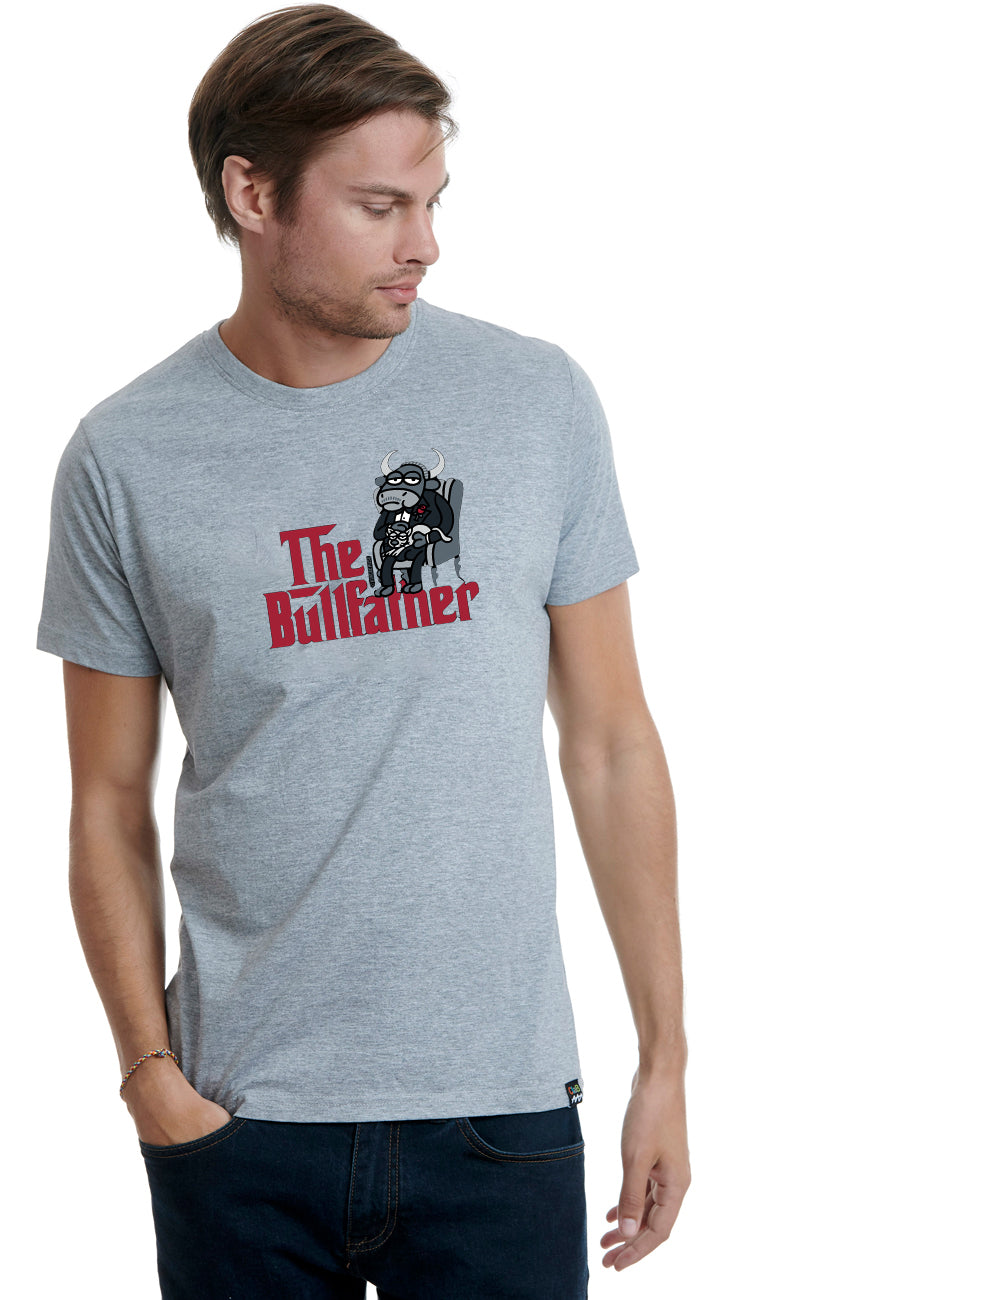 Kukuxumusu Mens T-Shirt The BullFather